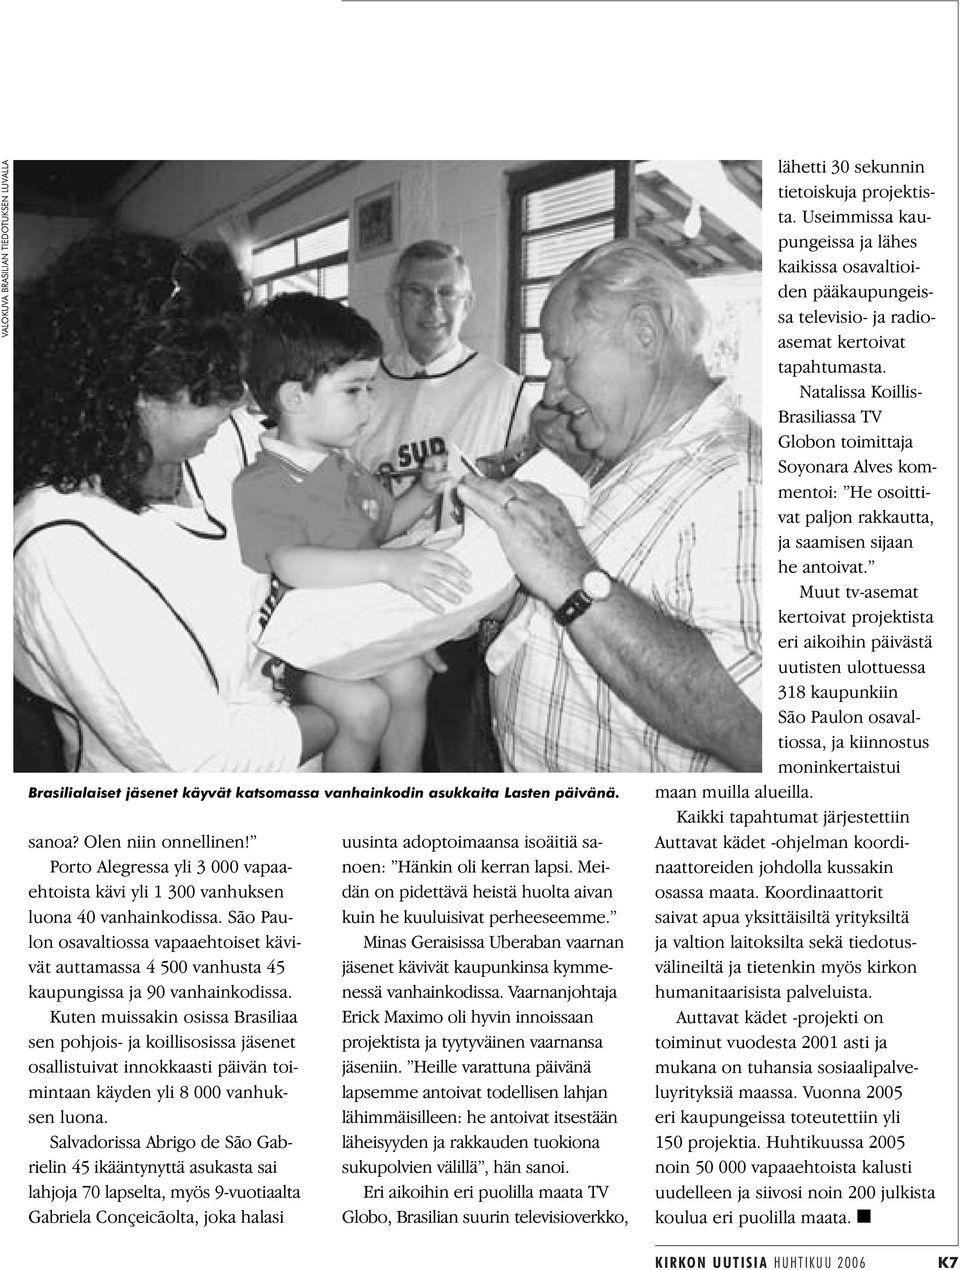 Kuten muissakin osissa Brasiliaa sen pohjois- ja koillisosissa jäsenet osallistuivat innokkaasti päivän toimintaan käyden yli 8 000 vanhuksen luona.